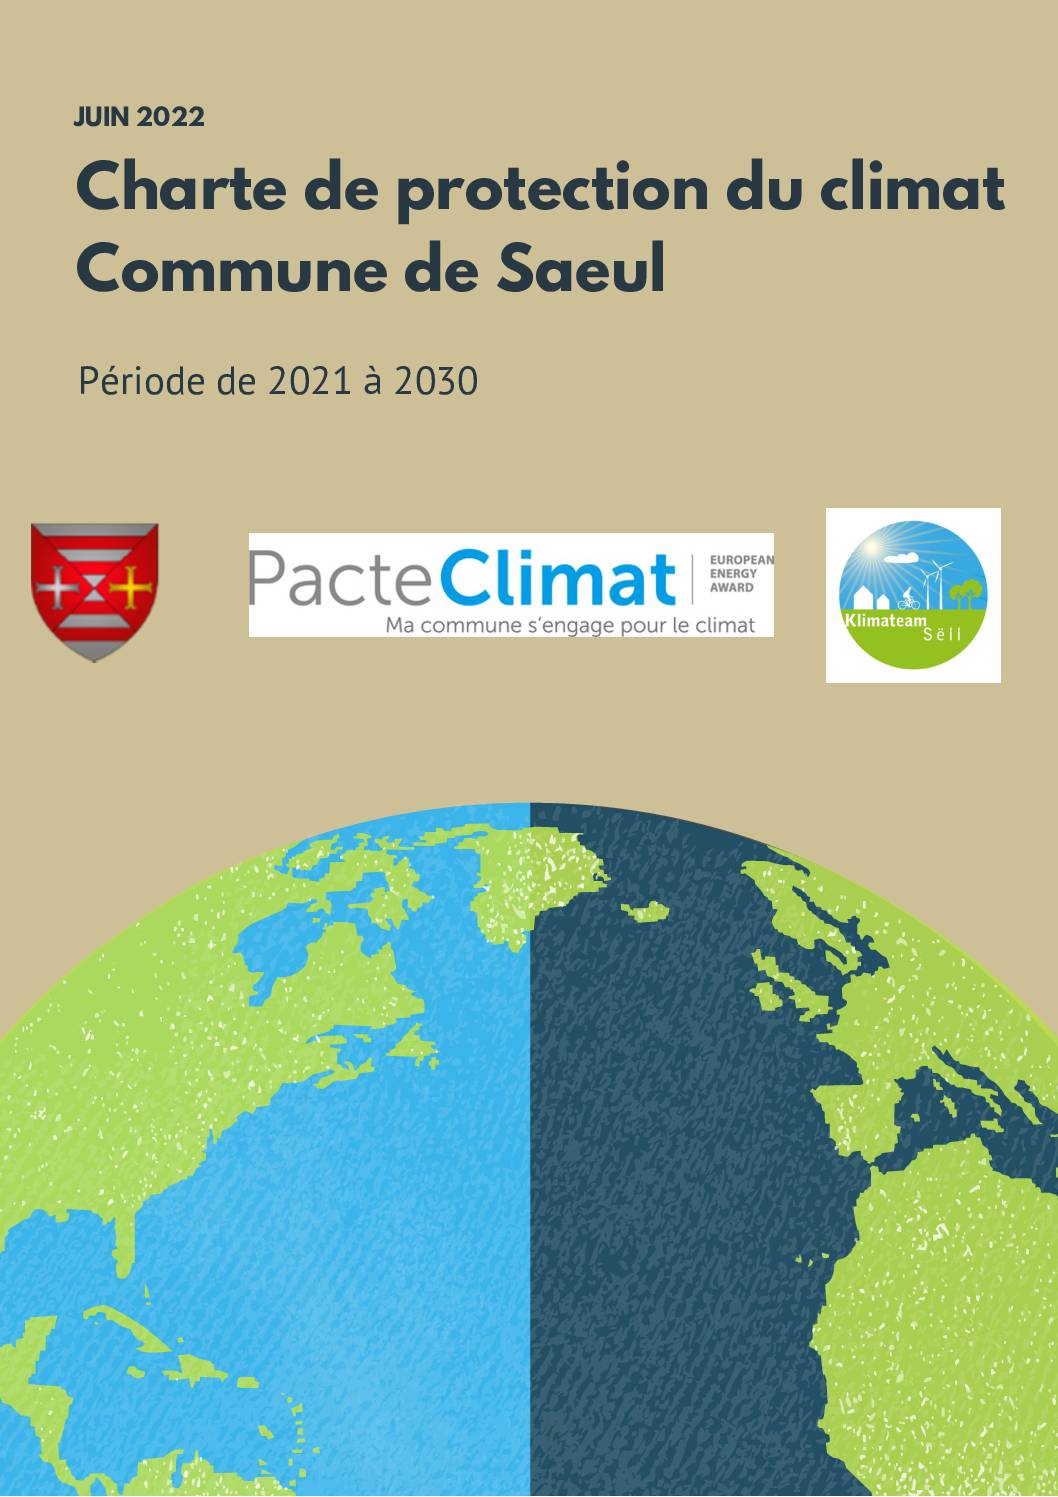 Charte de protection du climat 2030 - Commune de Saeul